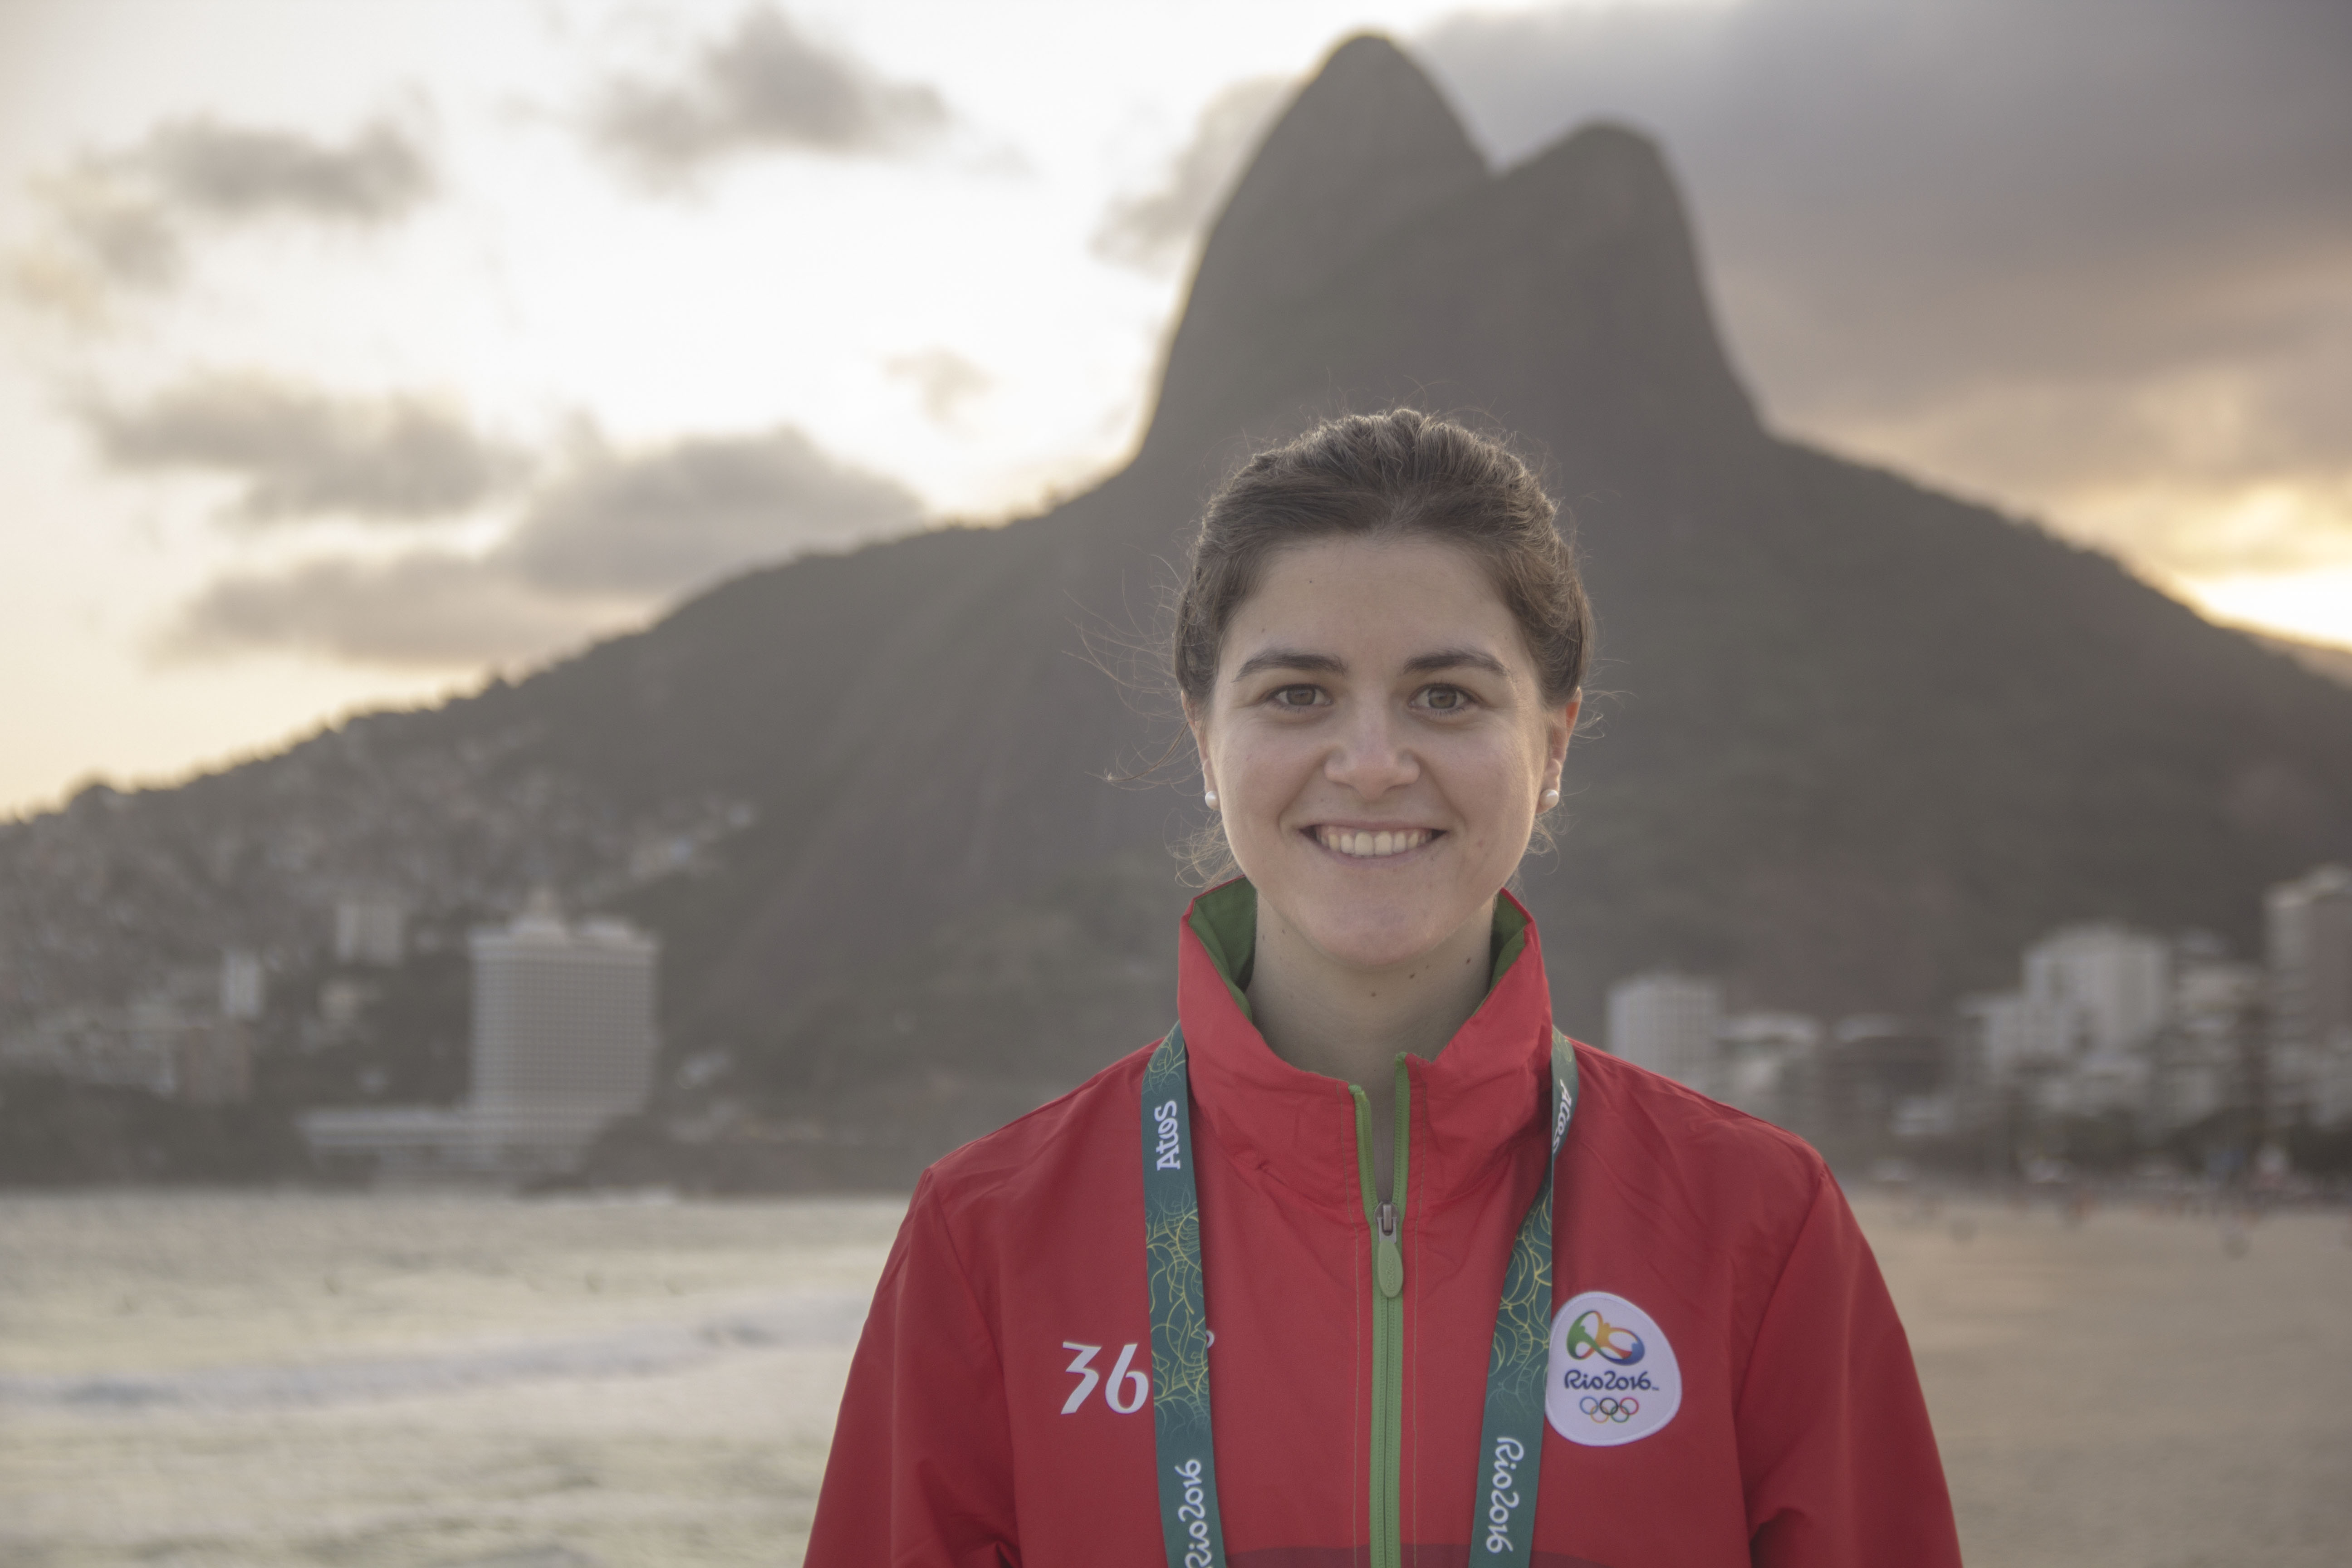 Entrevista con Ana Gacimartin: Olimpiadas, tendinopatías, LCA... pero sobre todo, hablamos de FISIOTERAPIA. ¡No os la perdáis!